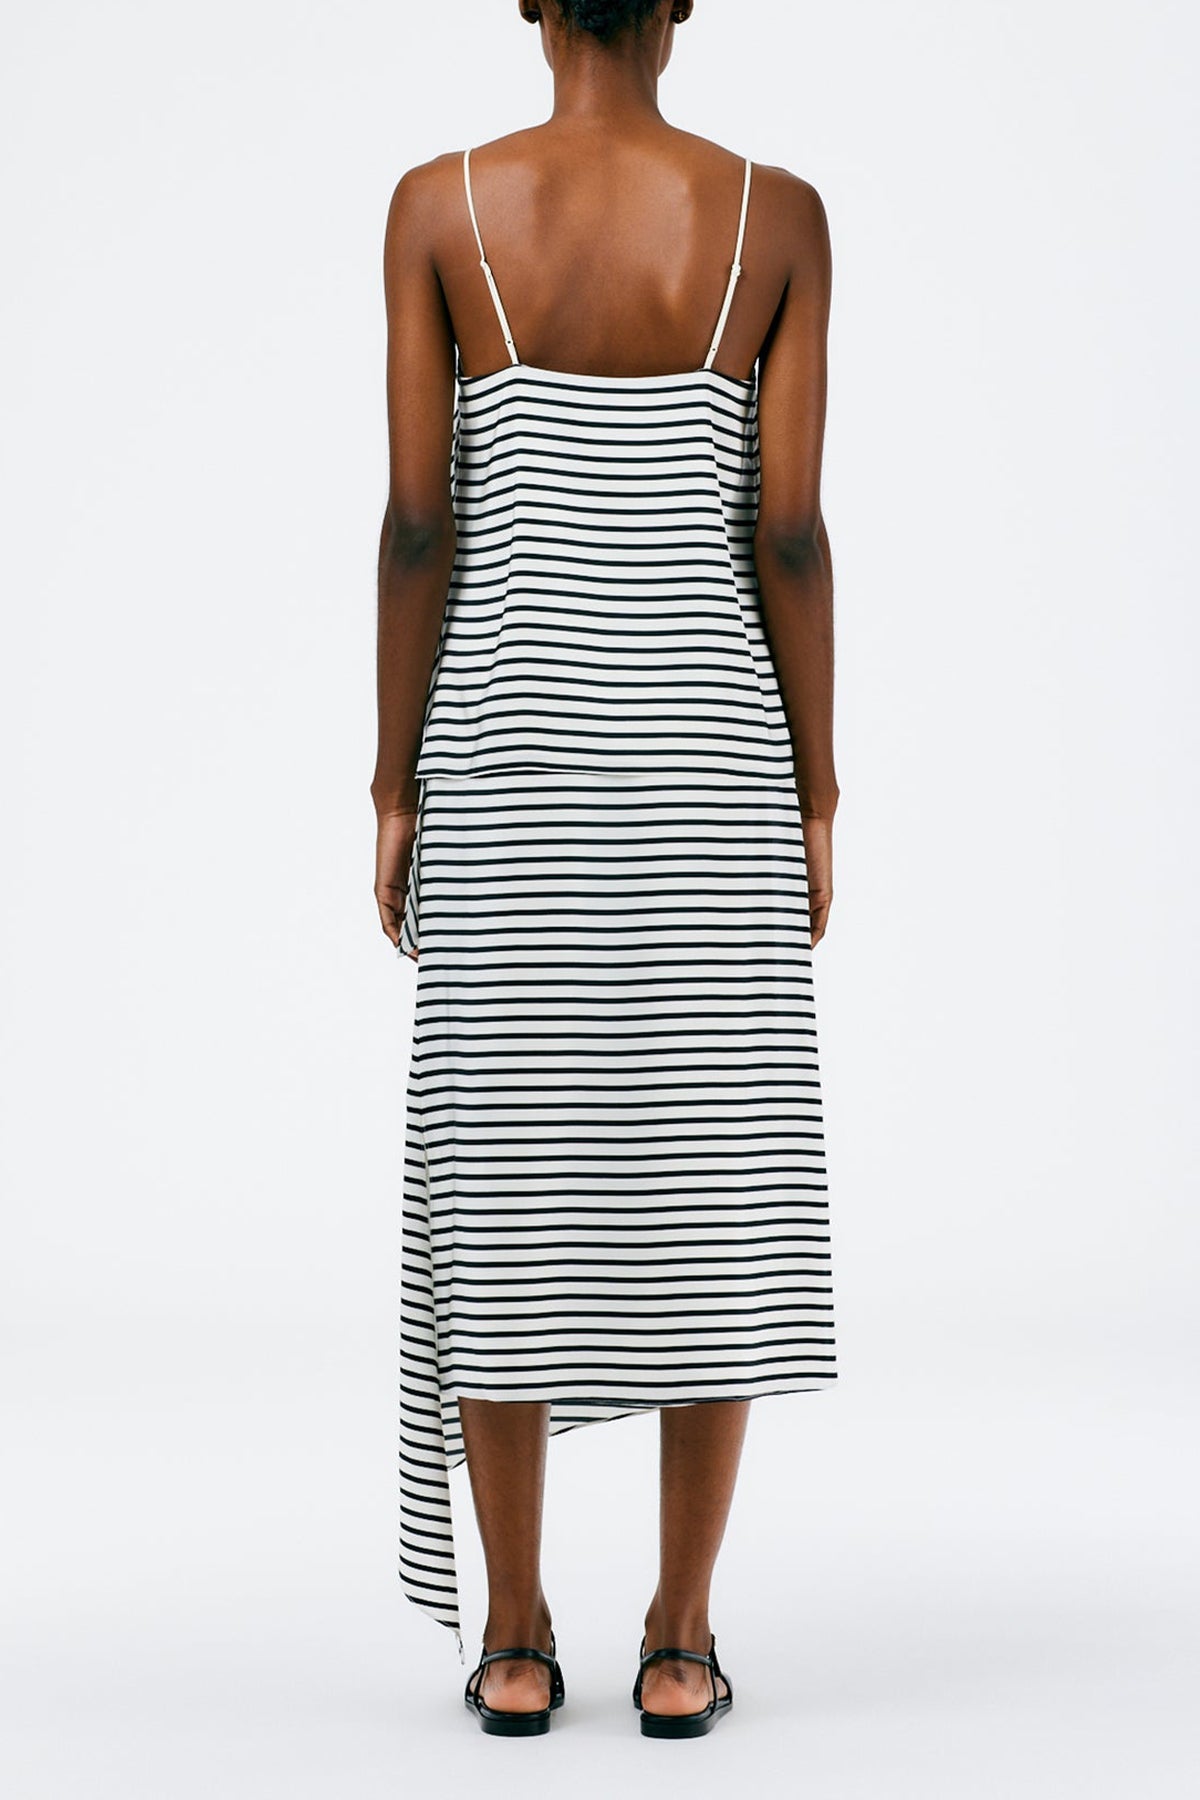 Identity Stripe Pencil Skirt in Black Multi - shop-olivia.com